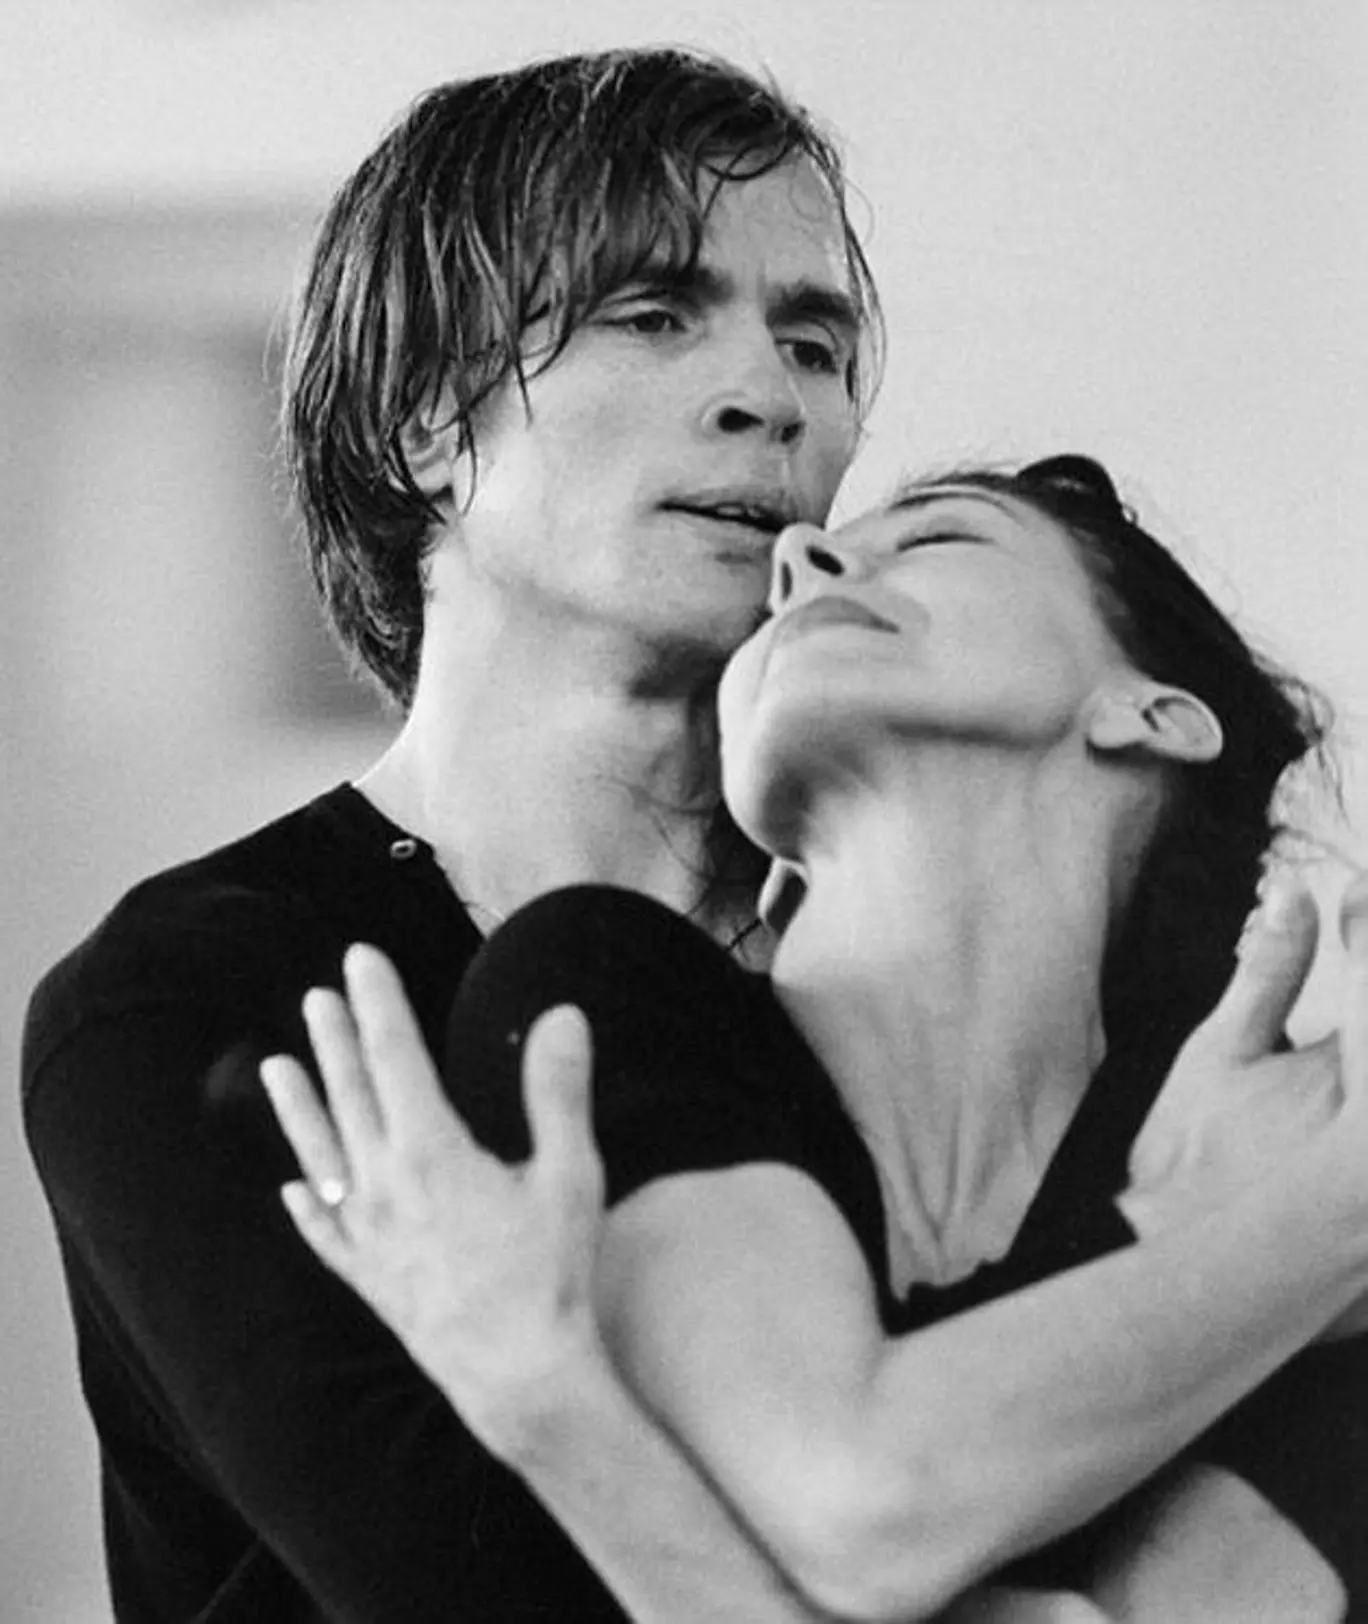 Fonteyn y Nureyev formaron la pareja más aplaudida del ballet en el siglo XX a partir de un primer duo en "Giselle" (Foto: Nureyev Foundation)